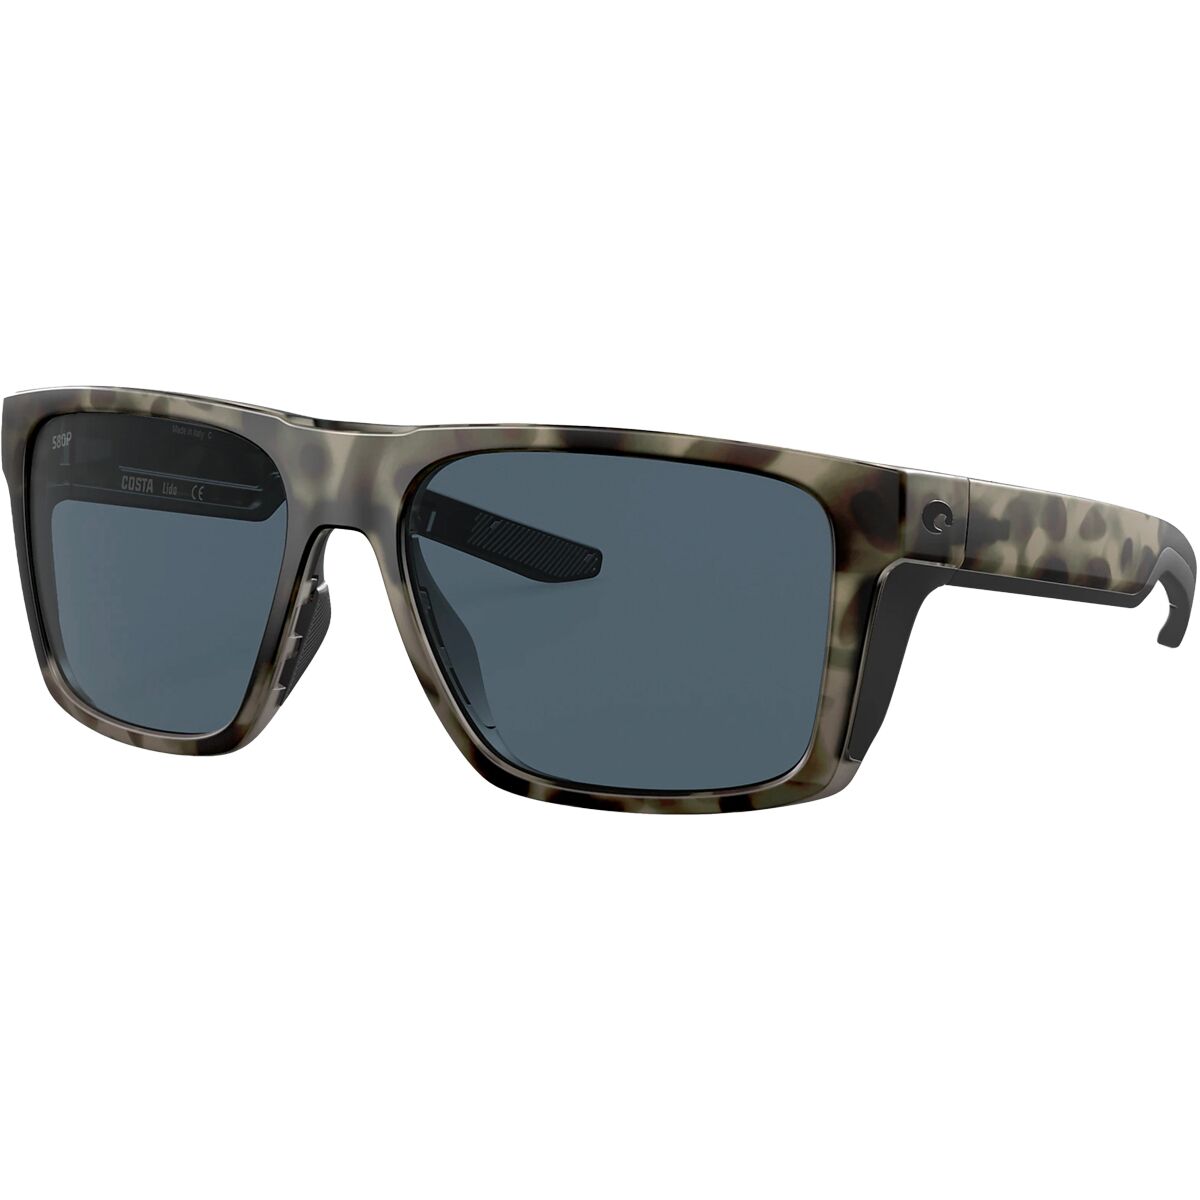 Costa Lido 580P Polarized Sunglasses